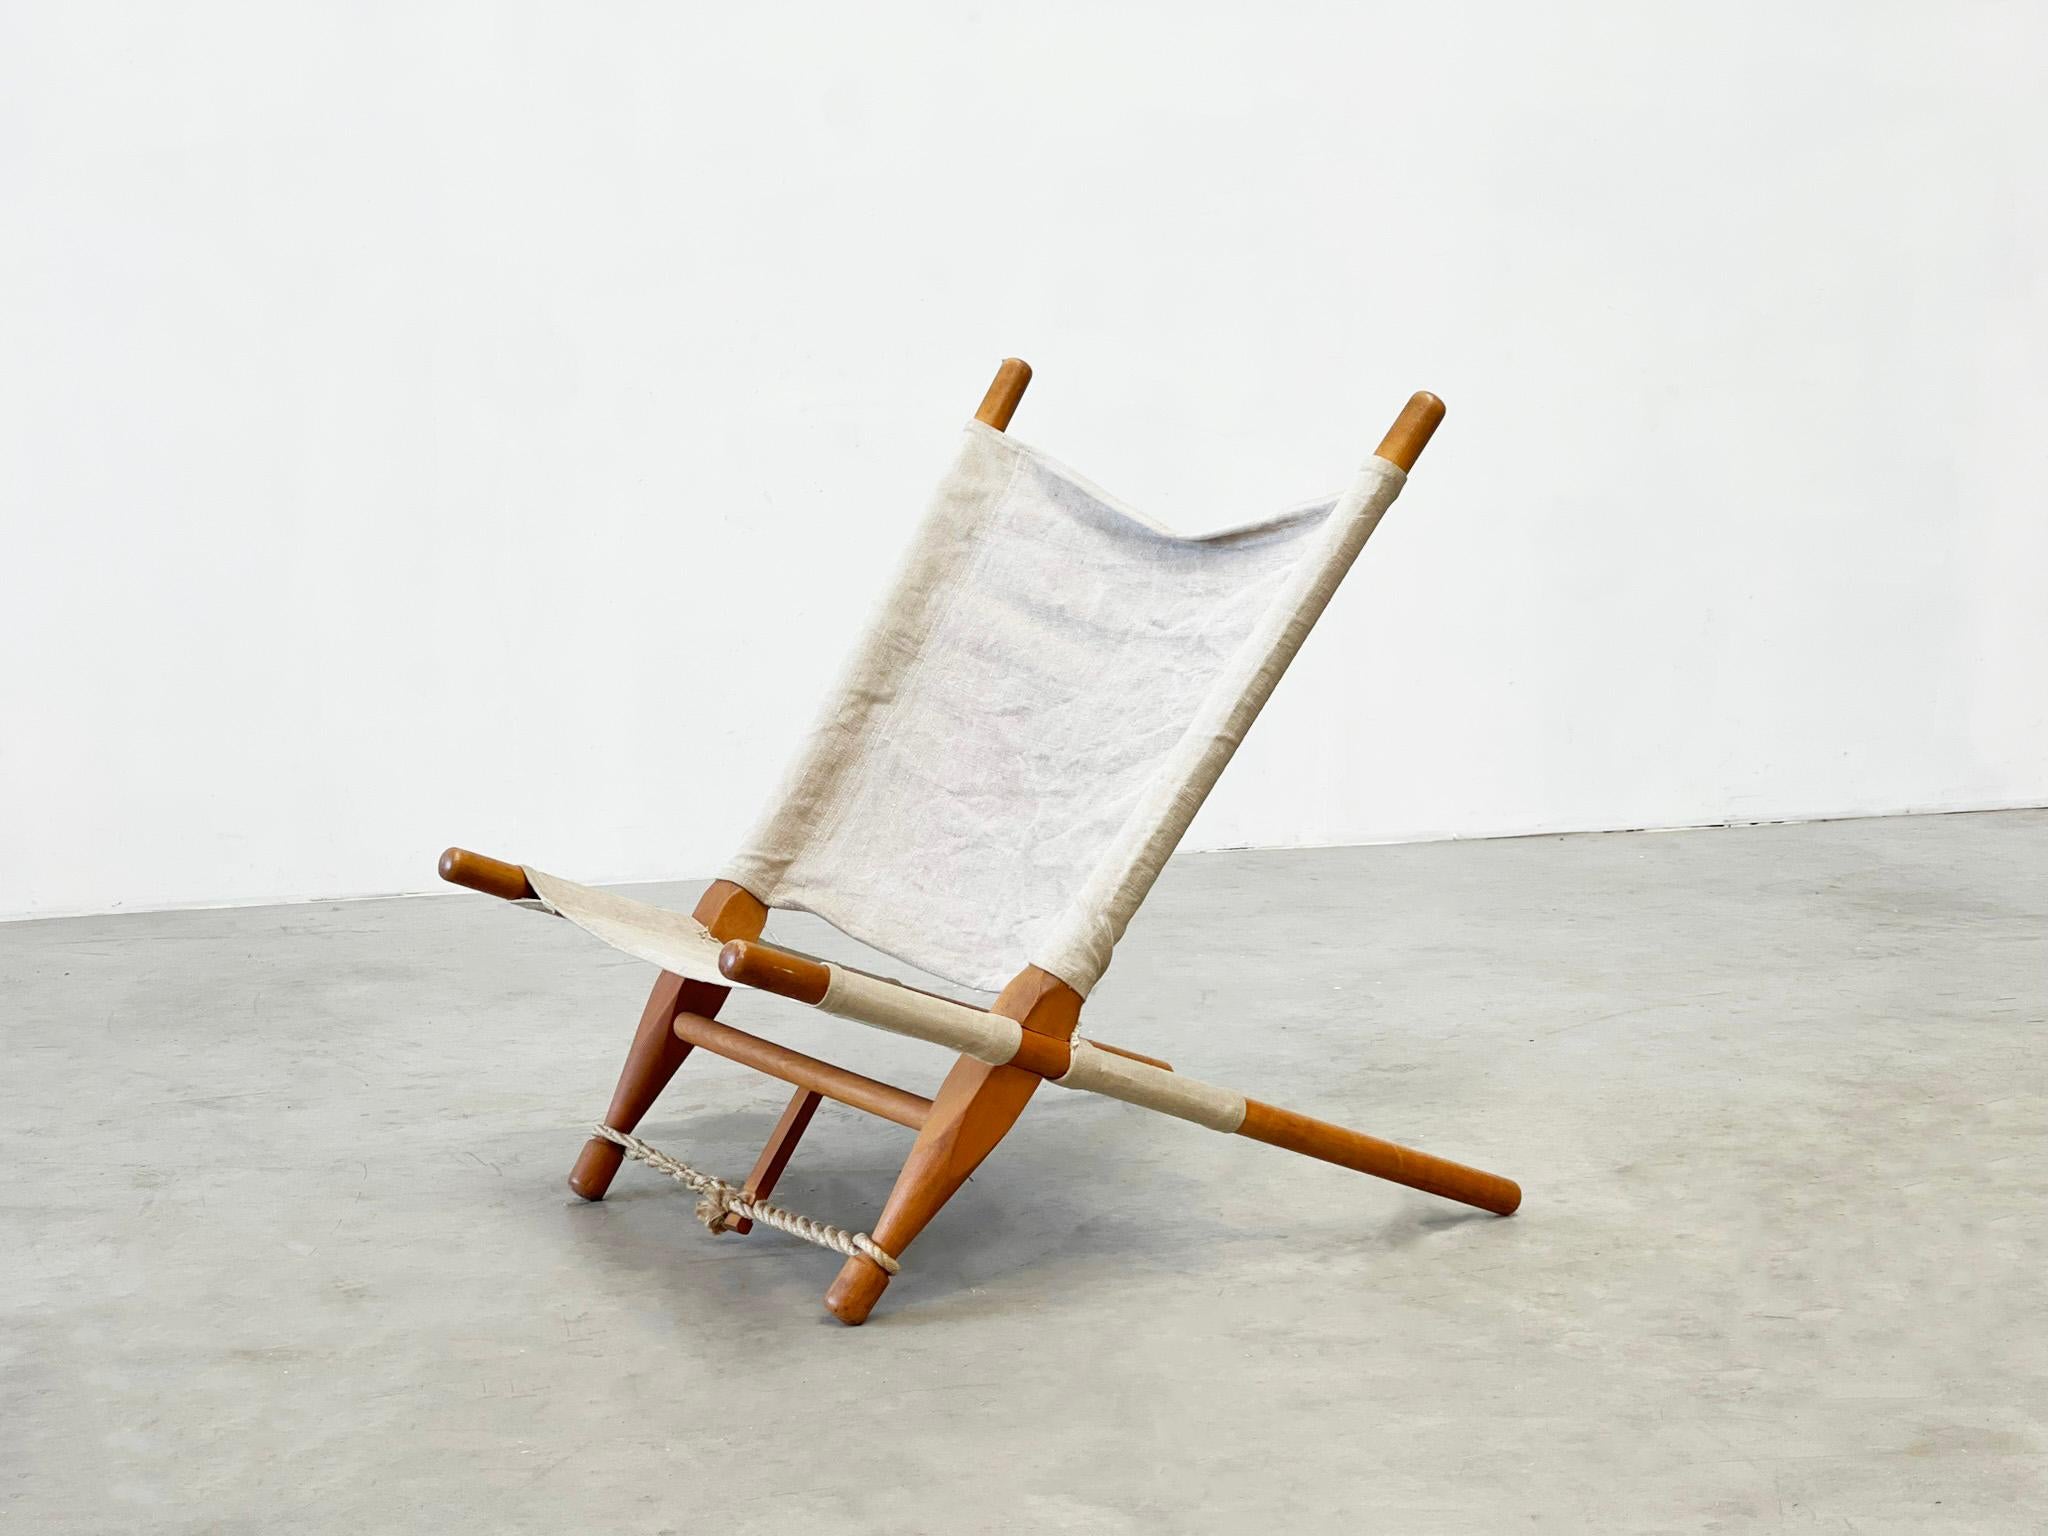 Chaise à scie de Ole Gjerløv-Knudsen, Danemark 1958
Chaise longue au design original d'Ole Gjerløv-Knudsen. Cette chaise est conçue pour être facile à utiliser, simple mais avec le souci du détail. La chaise est maintenue en place sans vis. Purement